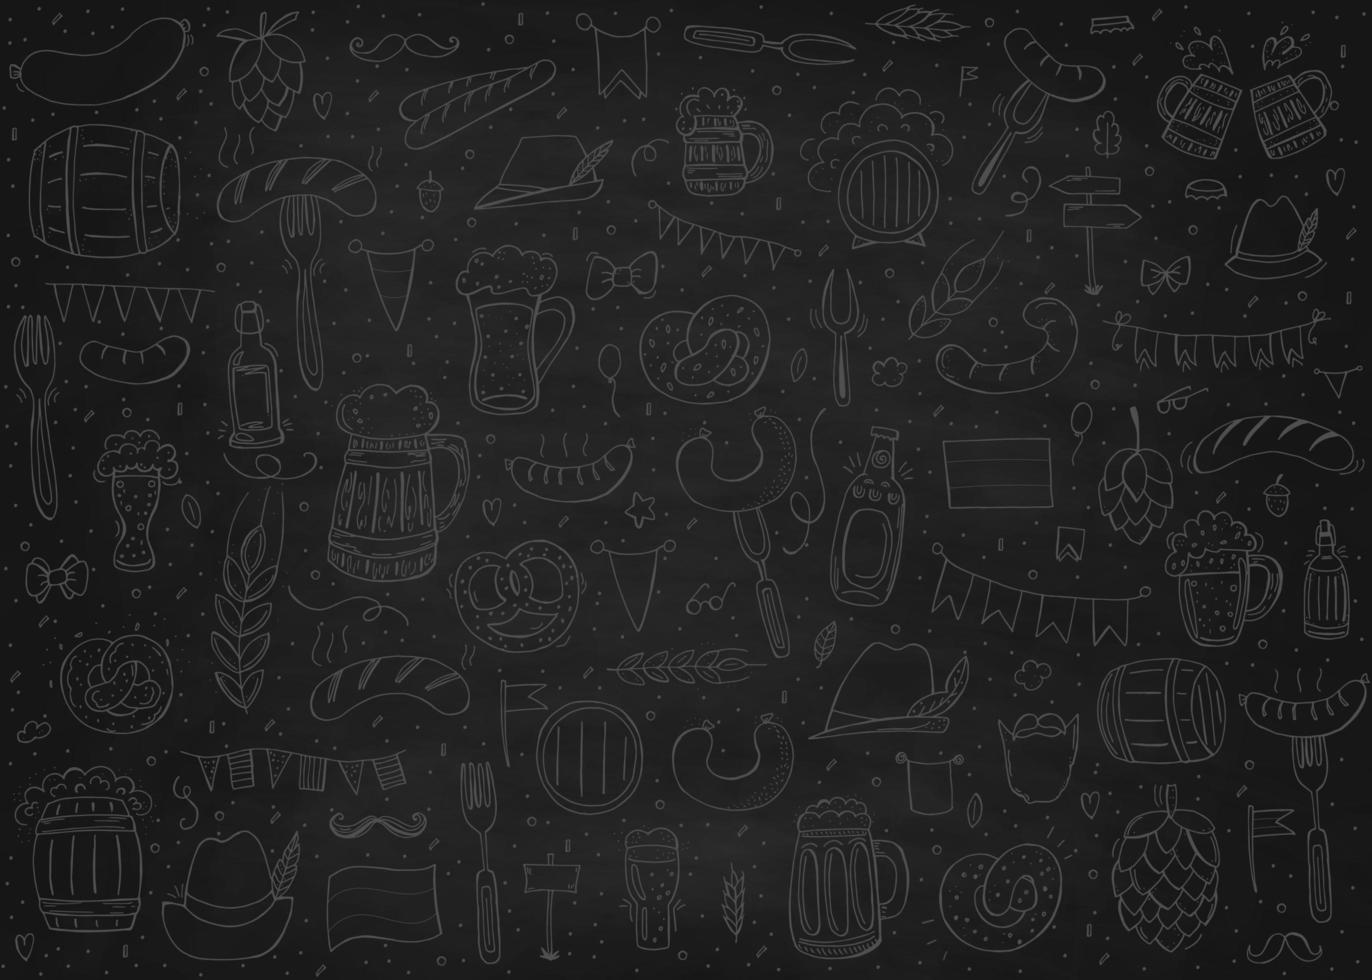 oktoberfest 2022 - festa della birra. elementi di doodle disegnati a mano. festa tradizionale tedesca. festa di ottobre, birra artigianale. rombo bianco-blu. insieme di elementi. vettore